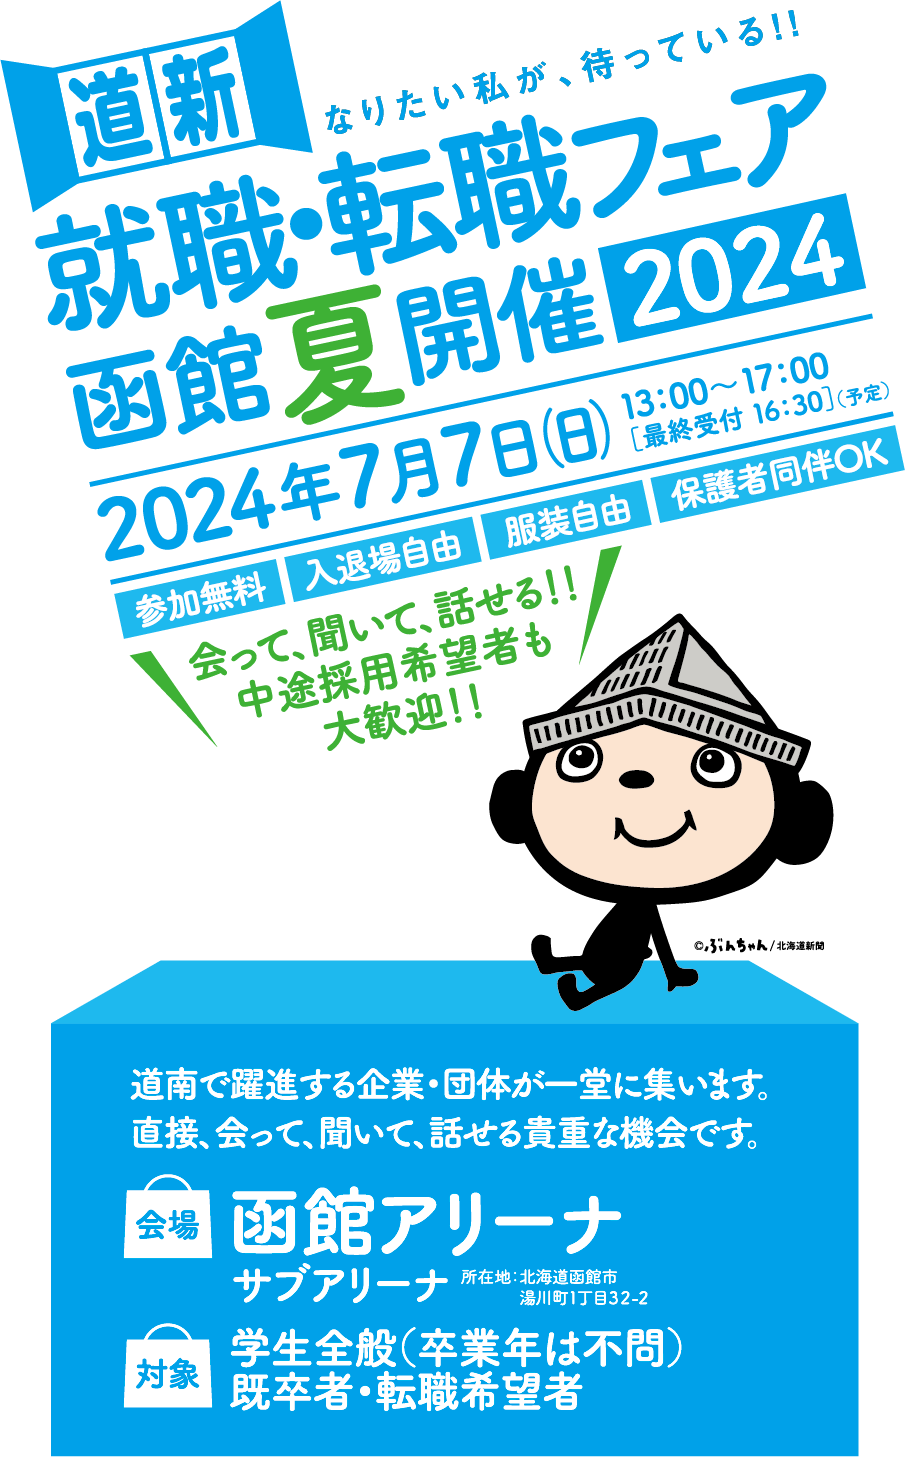 就活・転職フェア-函館夏開催2024-合同企業説明会